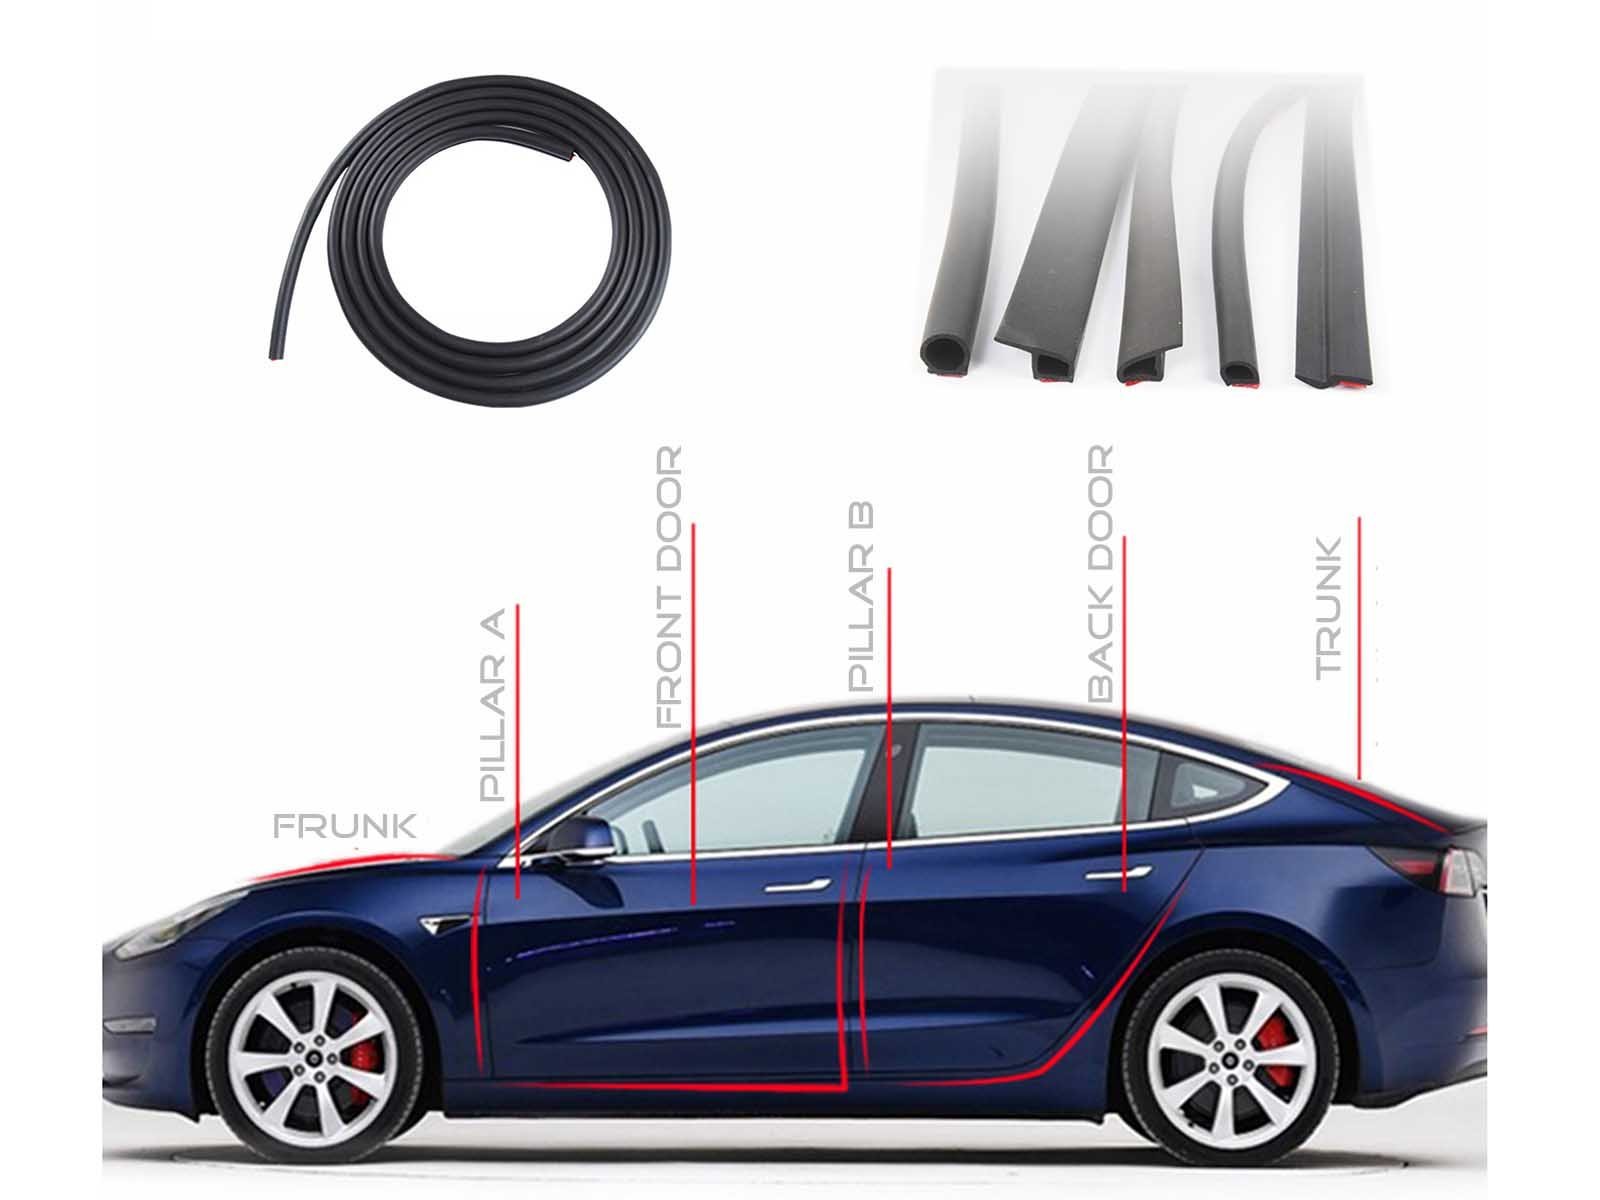  Tapis Coffre Doublure Tapis Coffre Voiture À Couverture  Complète pour Tesla pour Modèle 3 pour Modèle S pour Modèle X pour Modèle Y  Accessoires Voiture Tapis Protecteur Tapis (Couleur : Bleu)